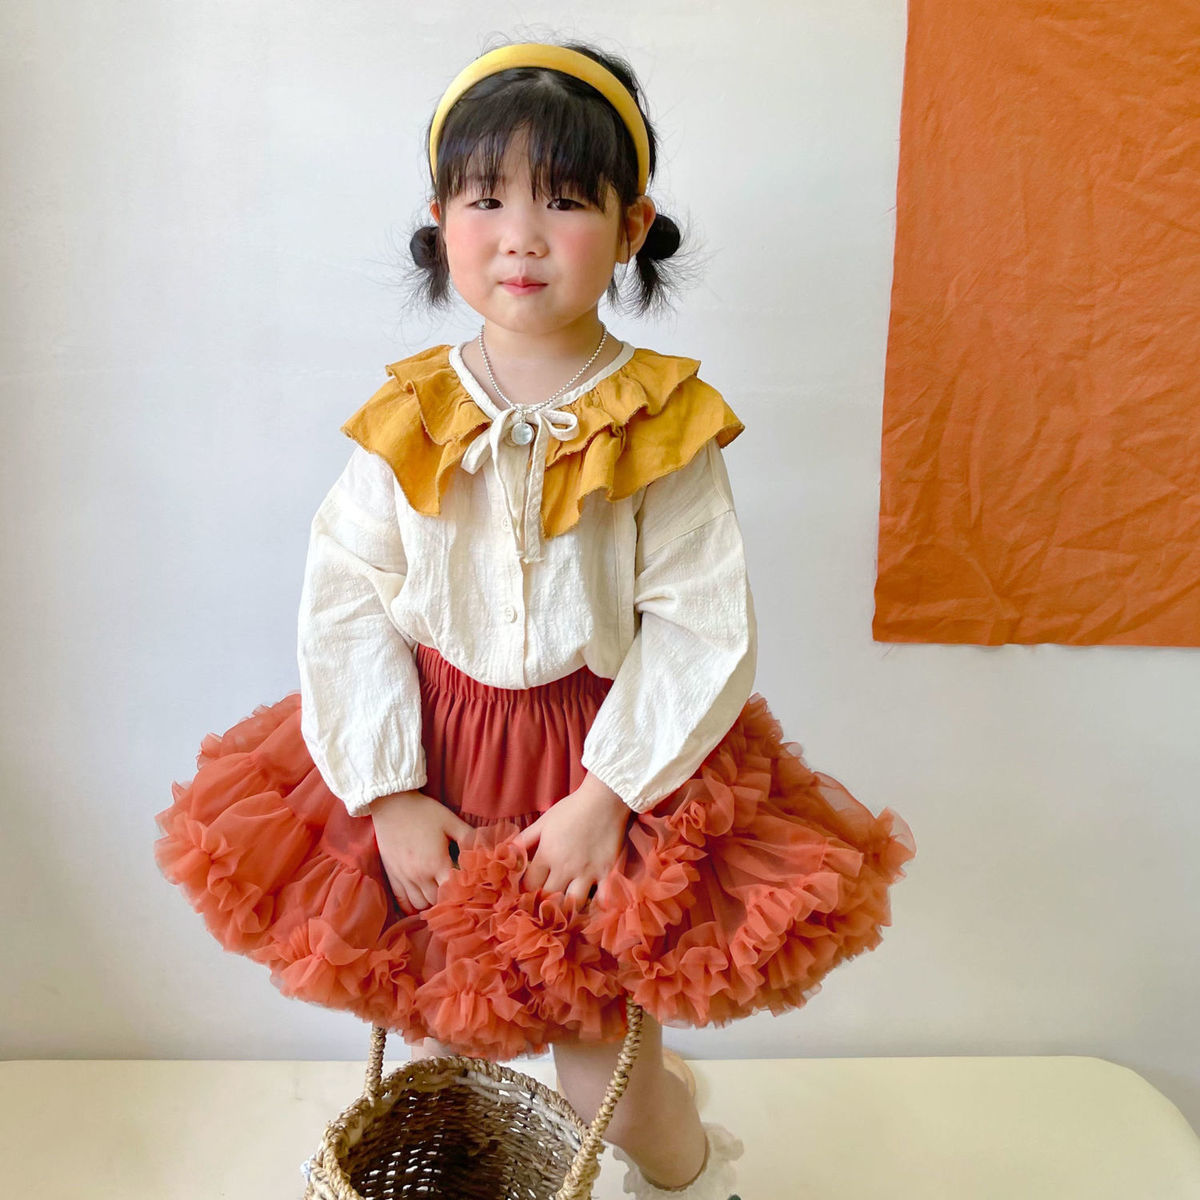 Children's skirt 2021 new foreign style net red girl tutu skirt skirt little girl's princess tutu skirt autumn